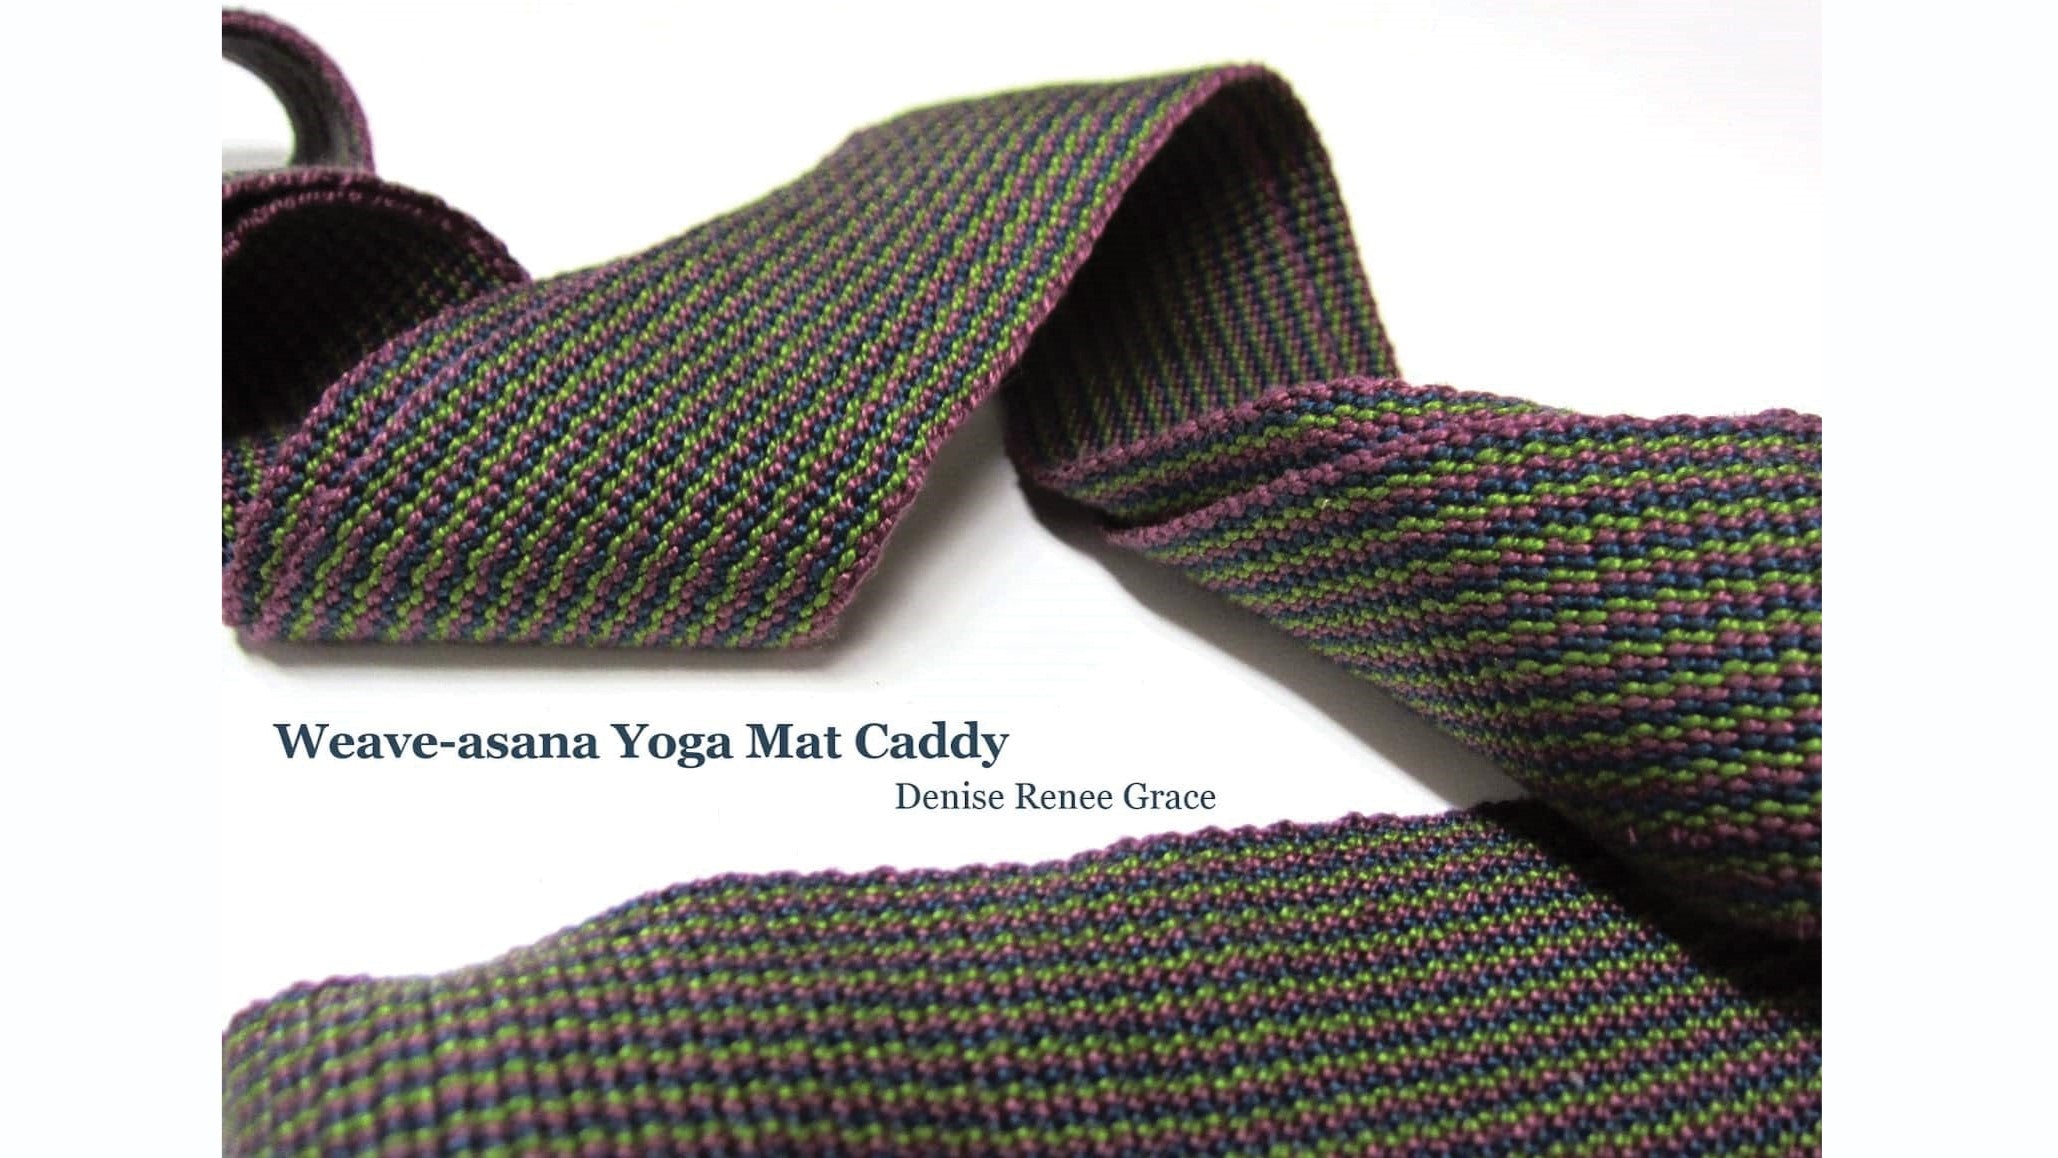 Weave-asana Yoga Mat Caddy